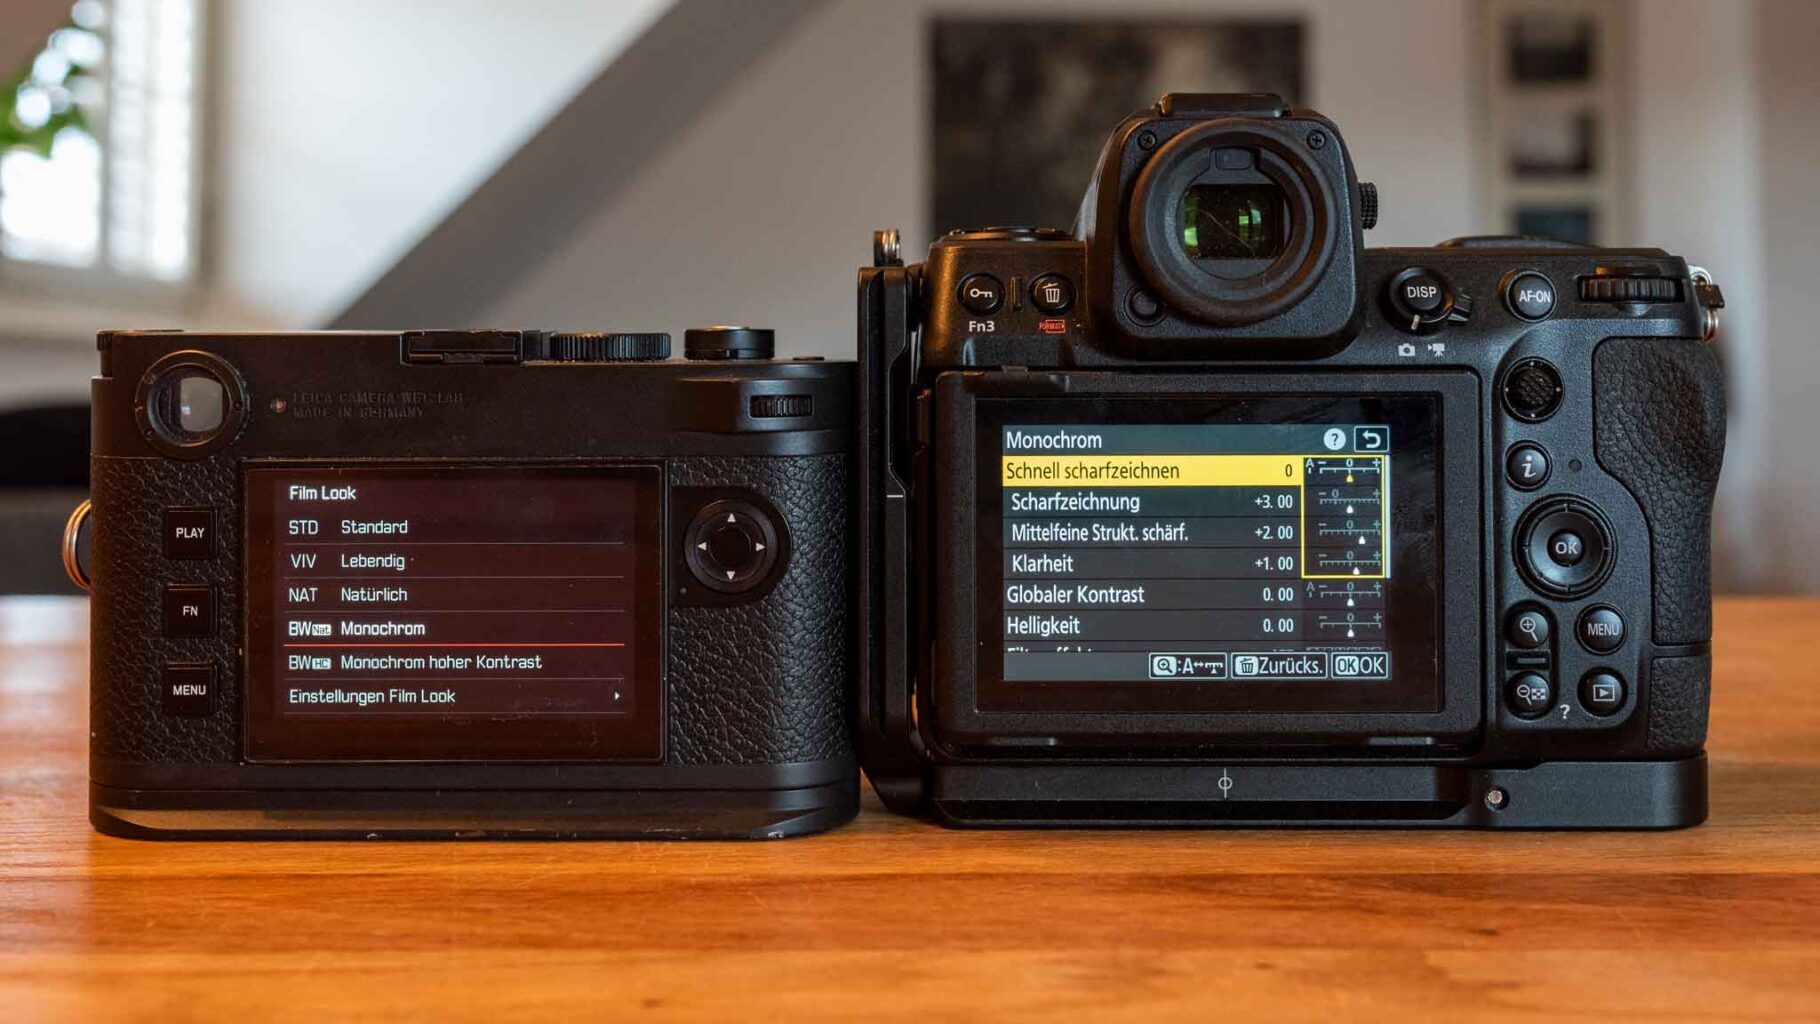 Nikon Picture Controll - Kamera auf Schwarzweiss einstellen [2:1]